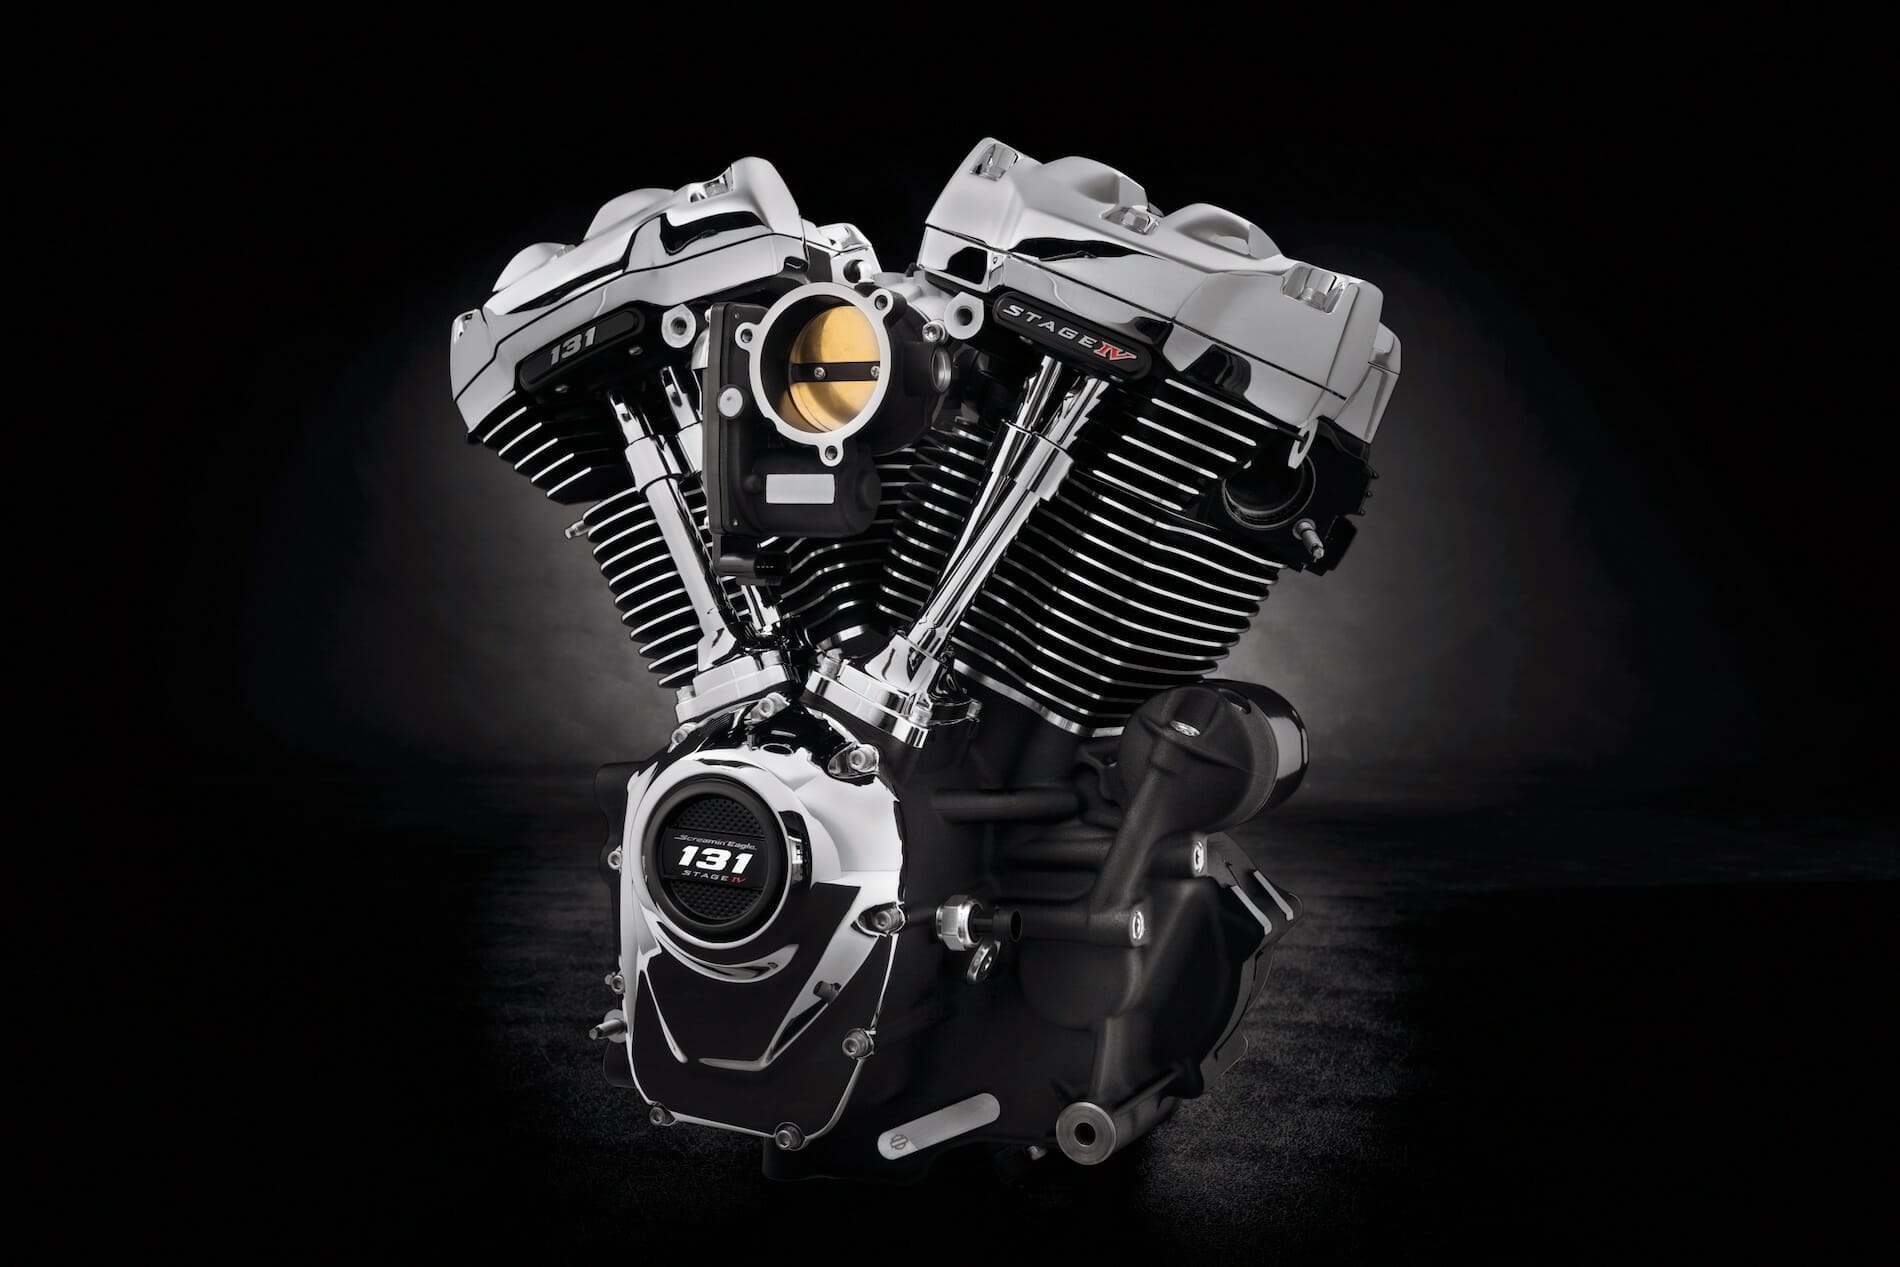 Neuer und stärkerer Harley-Davidson Motor – Screamin` Eagle 131 Crate Motor
- auch in der MOTORRAD NACHRICHTEN APP